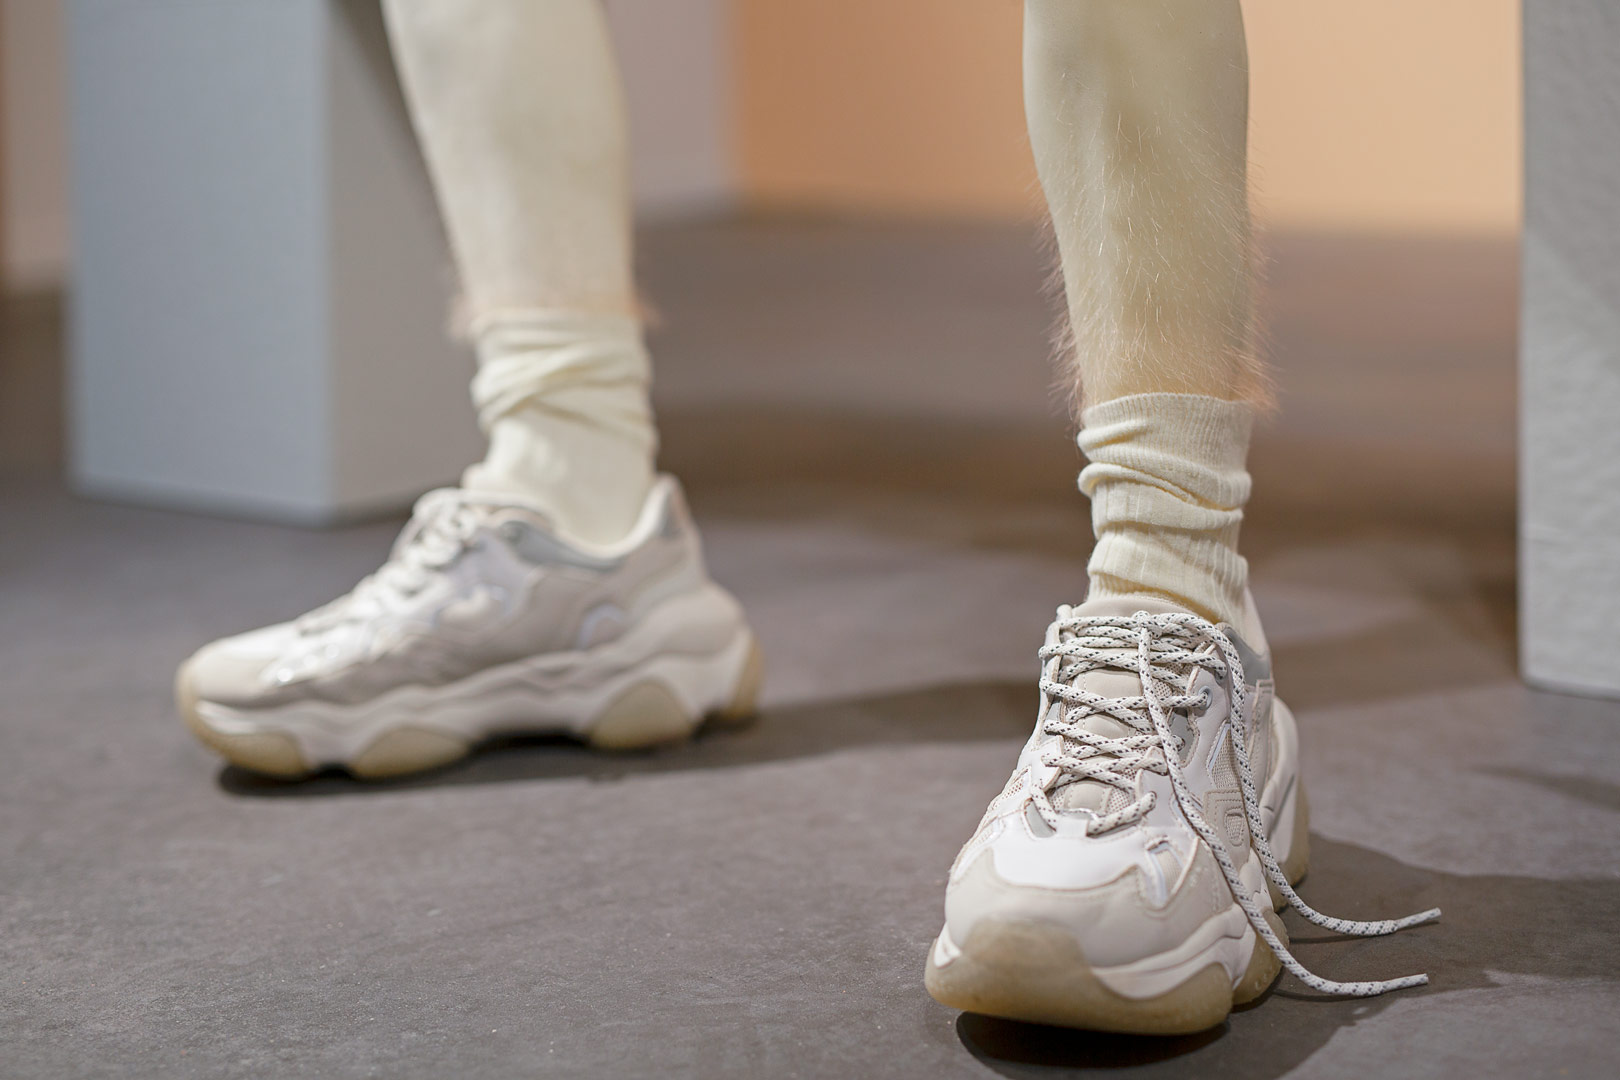 Fragment de l'installation Summer Seum. Focus resserré sur le bas d'une paire de jambes en cire portant des baskets et chaussettes beiges. Les mollets sont recouverts d'une fine pilosité rousses.